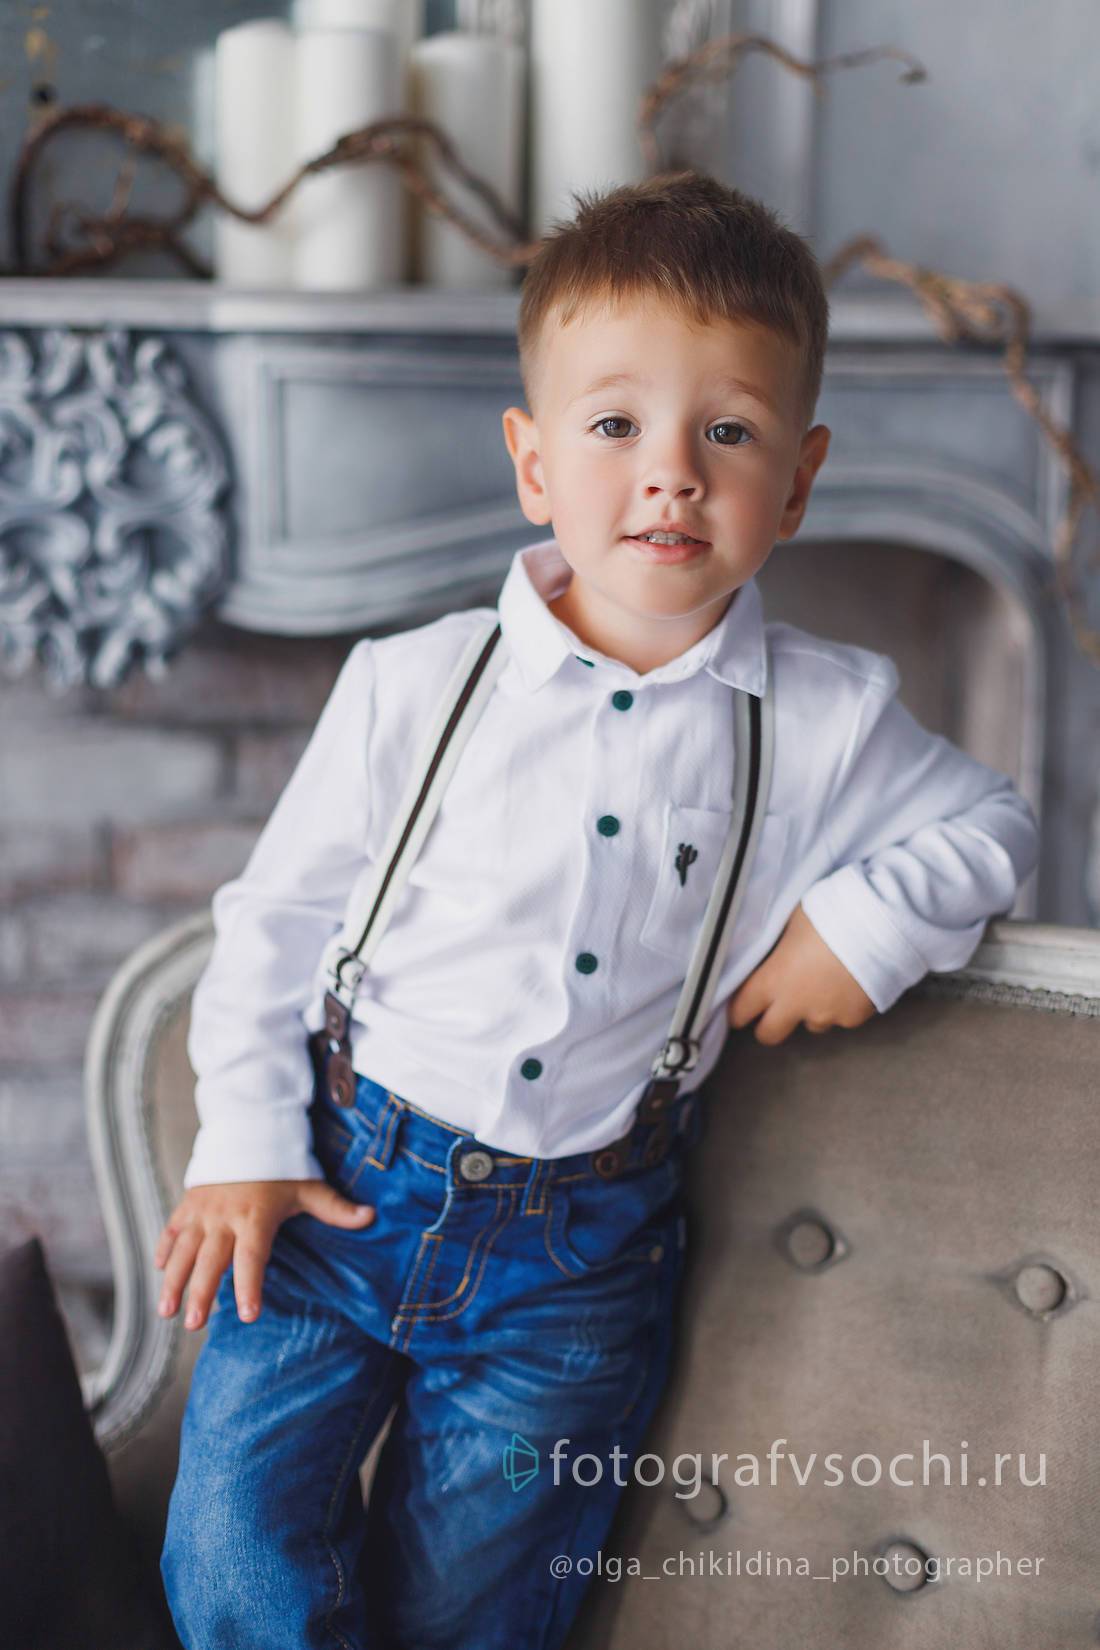 Портрет мальчика в белой рубашке и джинсах с подтяжками